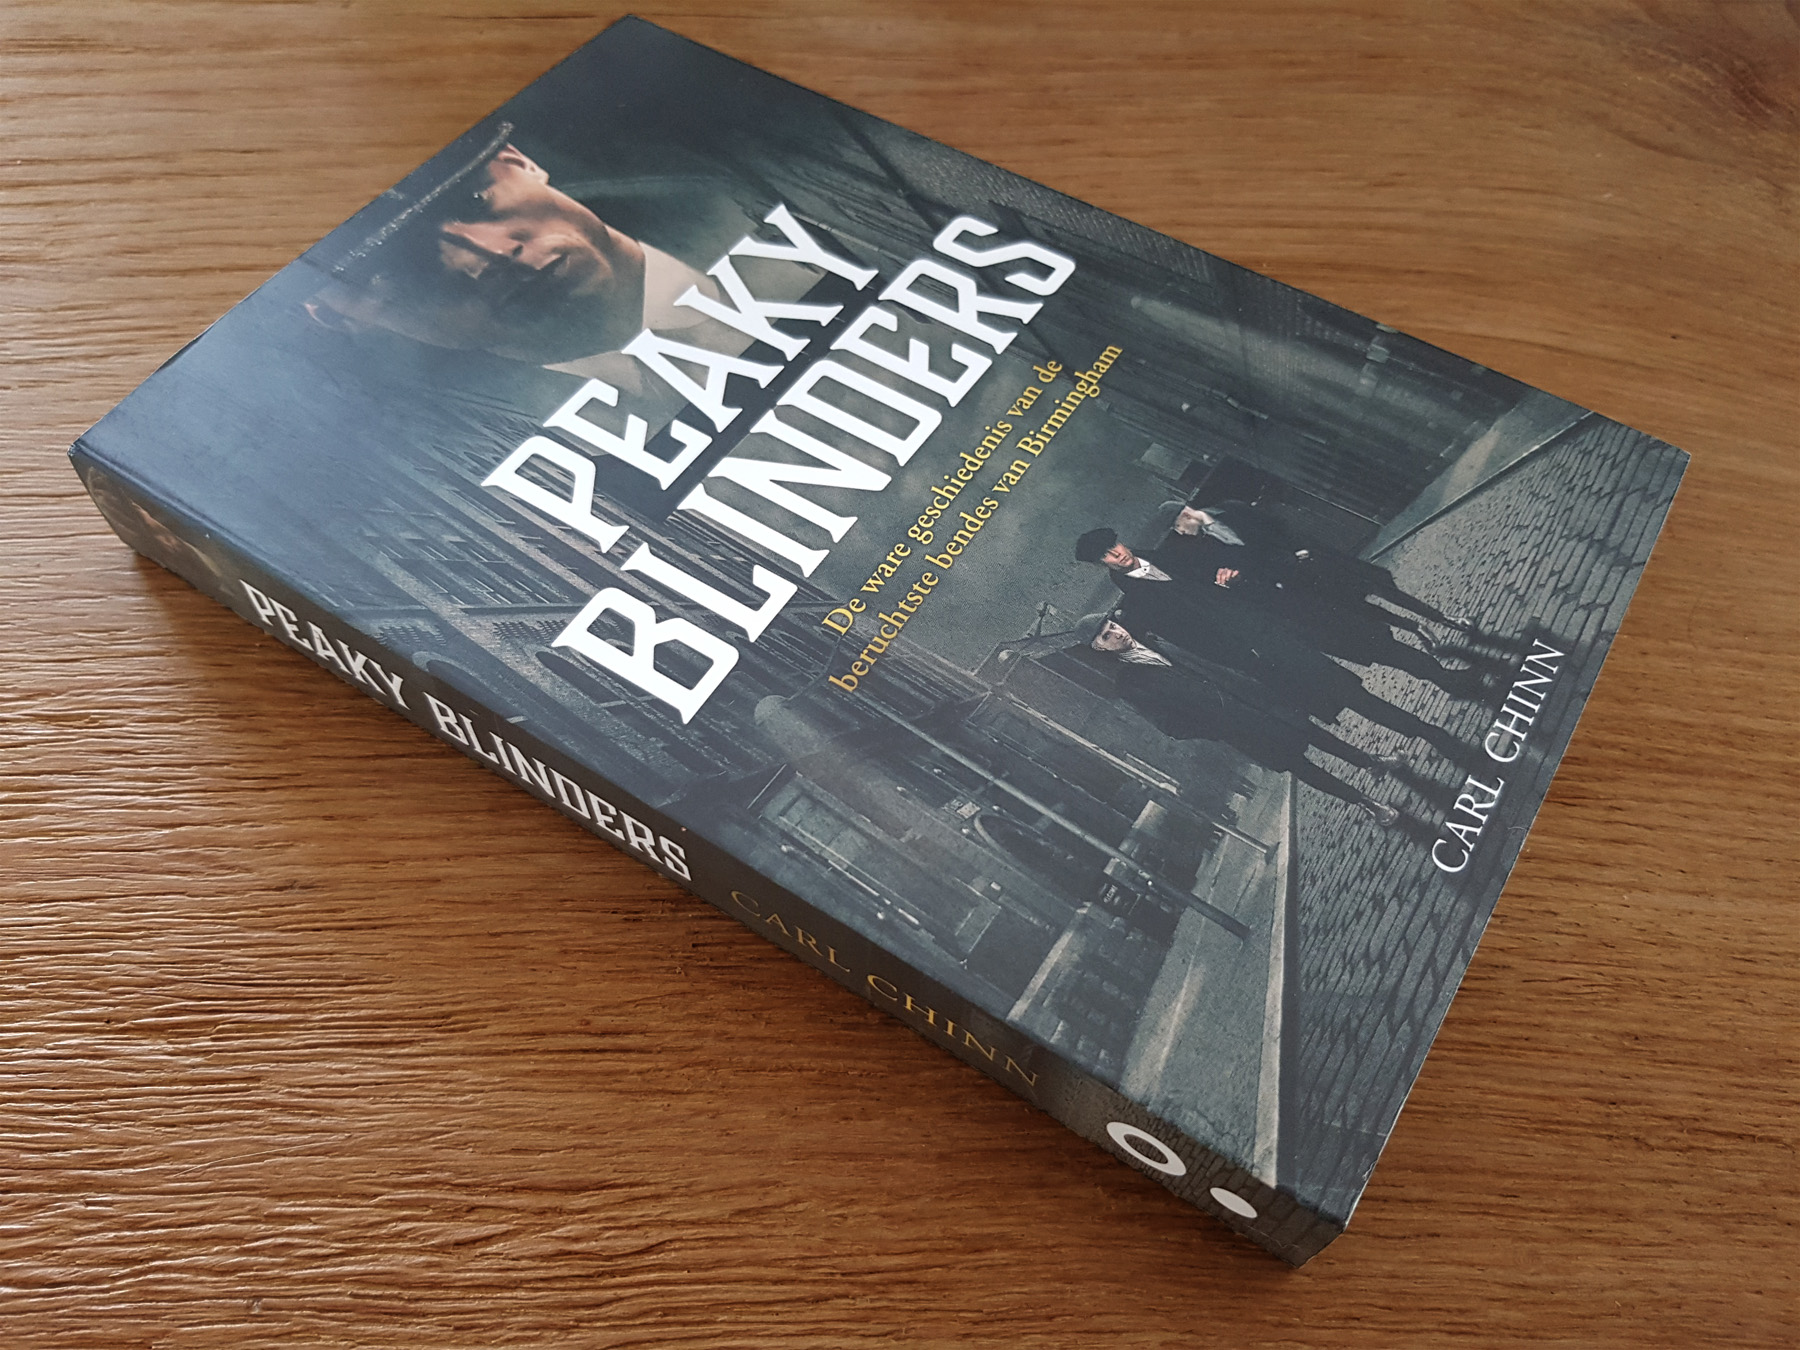 Boekrecensie: Peaky Blinders, de ware geschiedenis – Carl Chinn